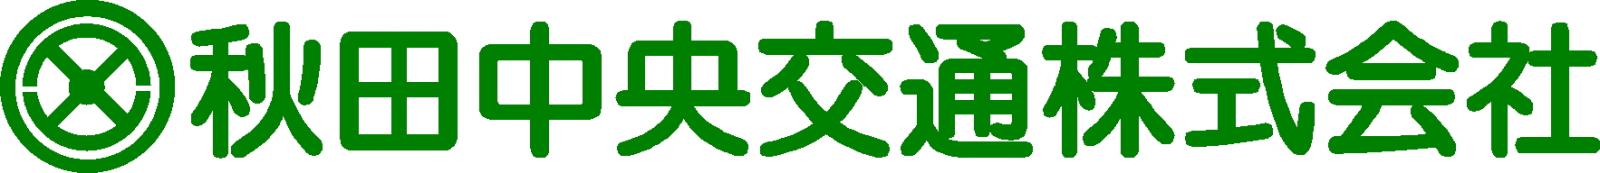 ロゴ:秋田中央交通株式会社